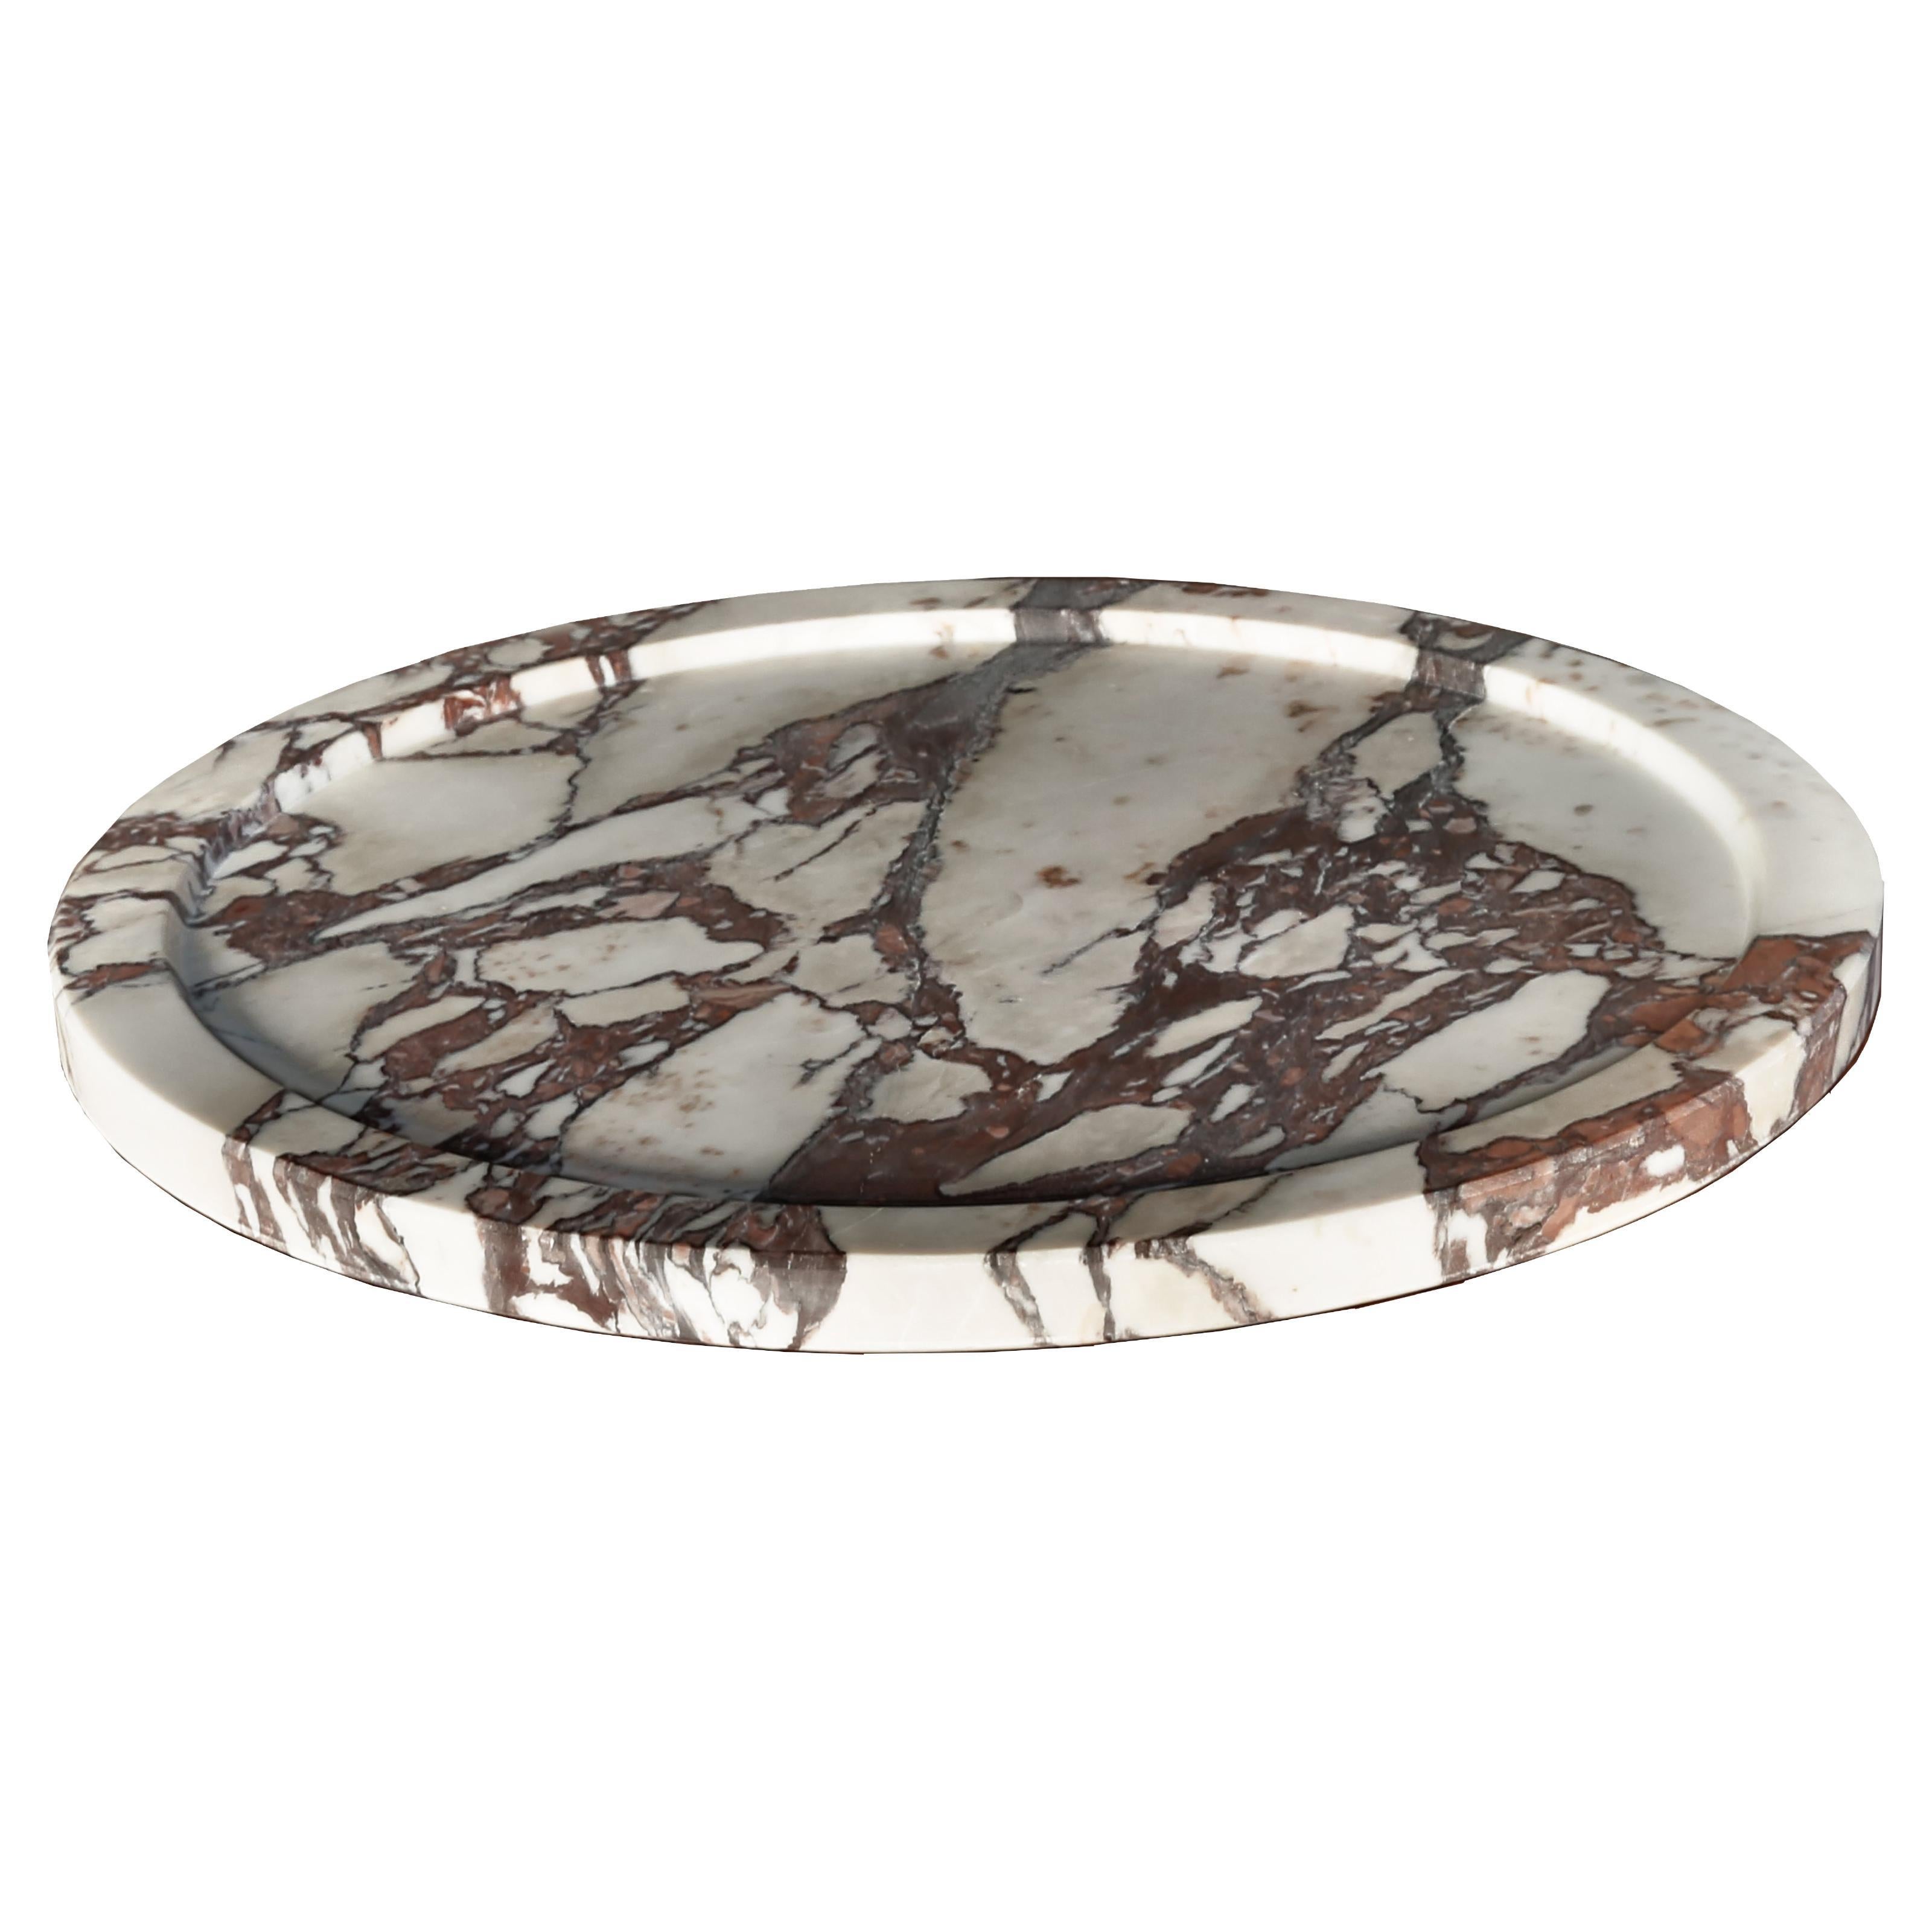 Trayano, the handmade tray in precious marble